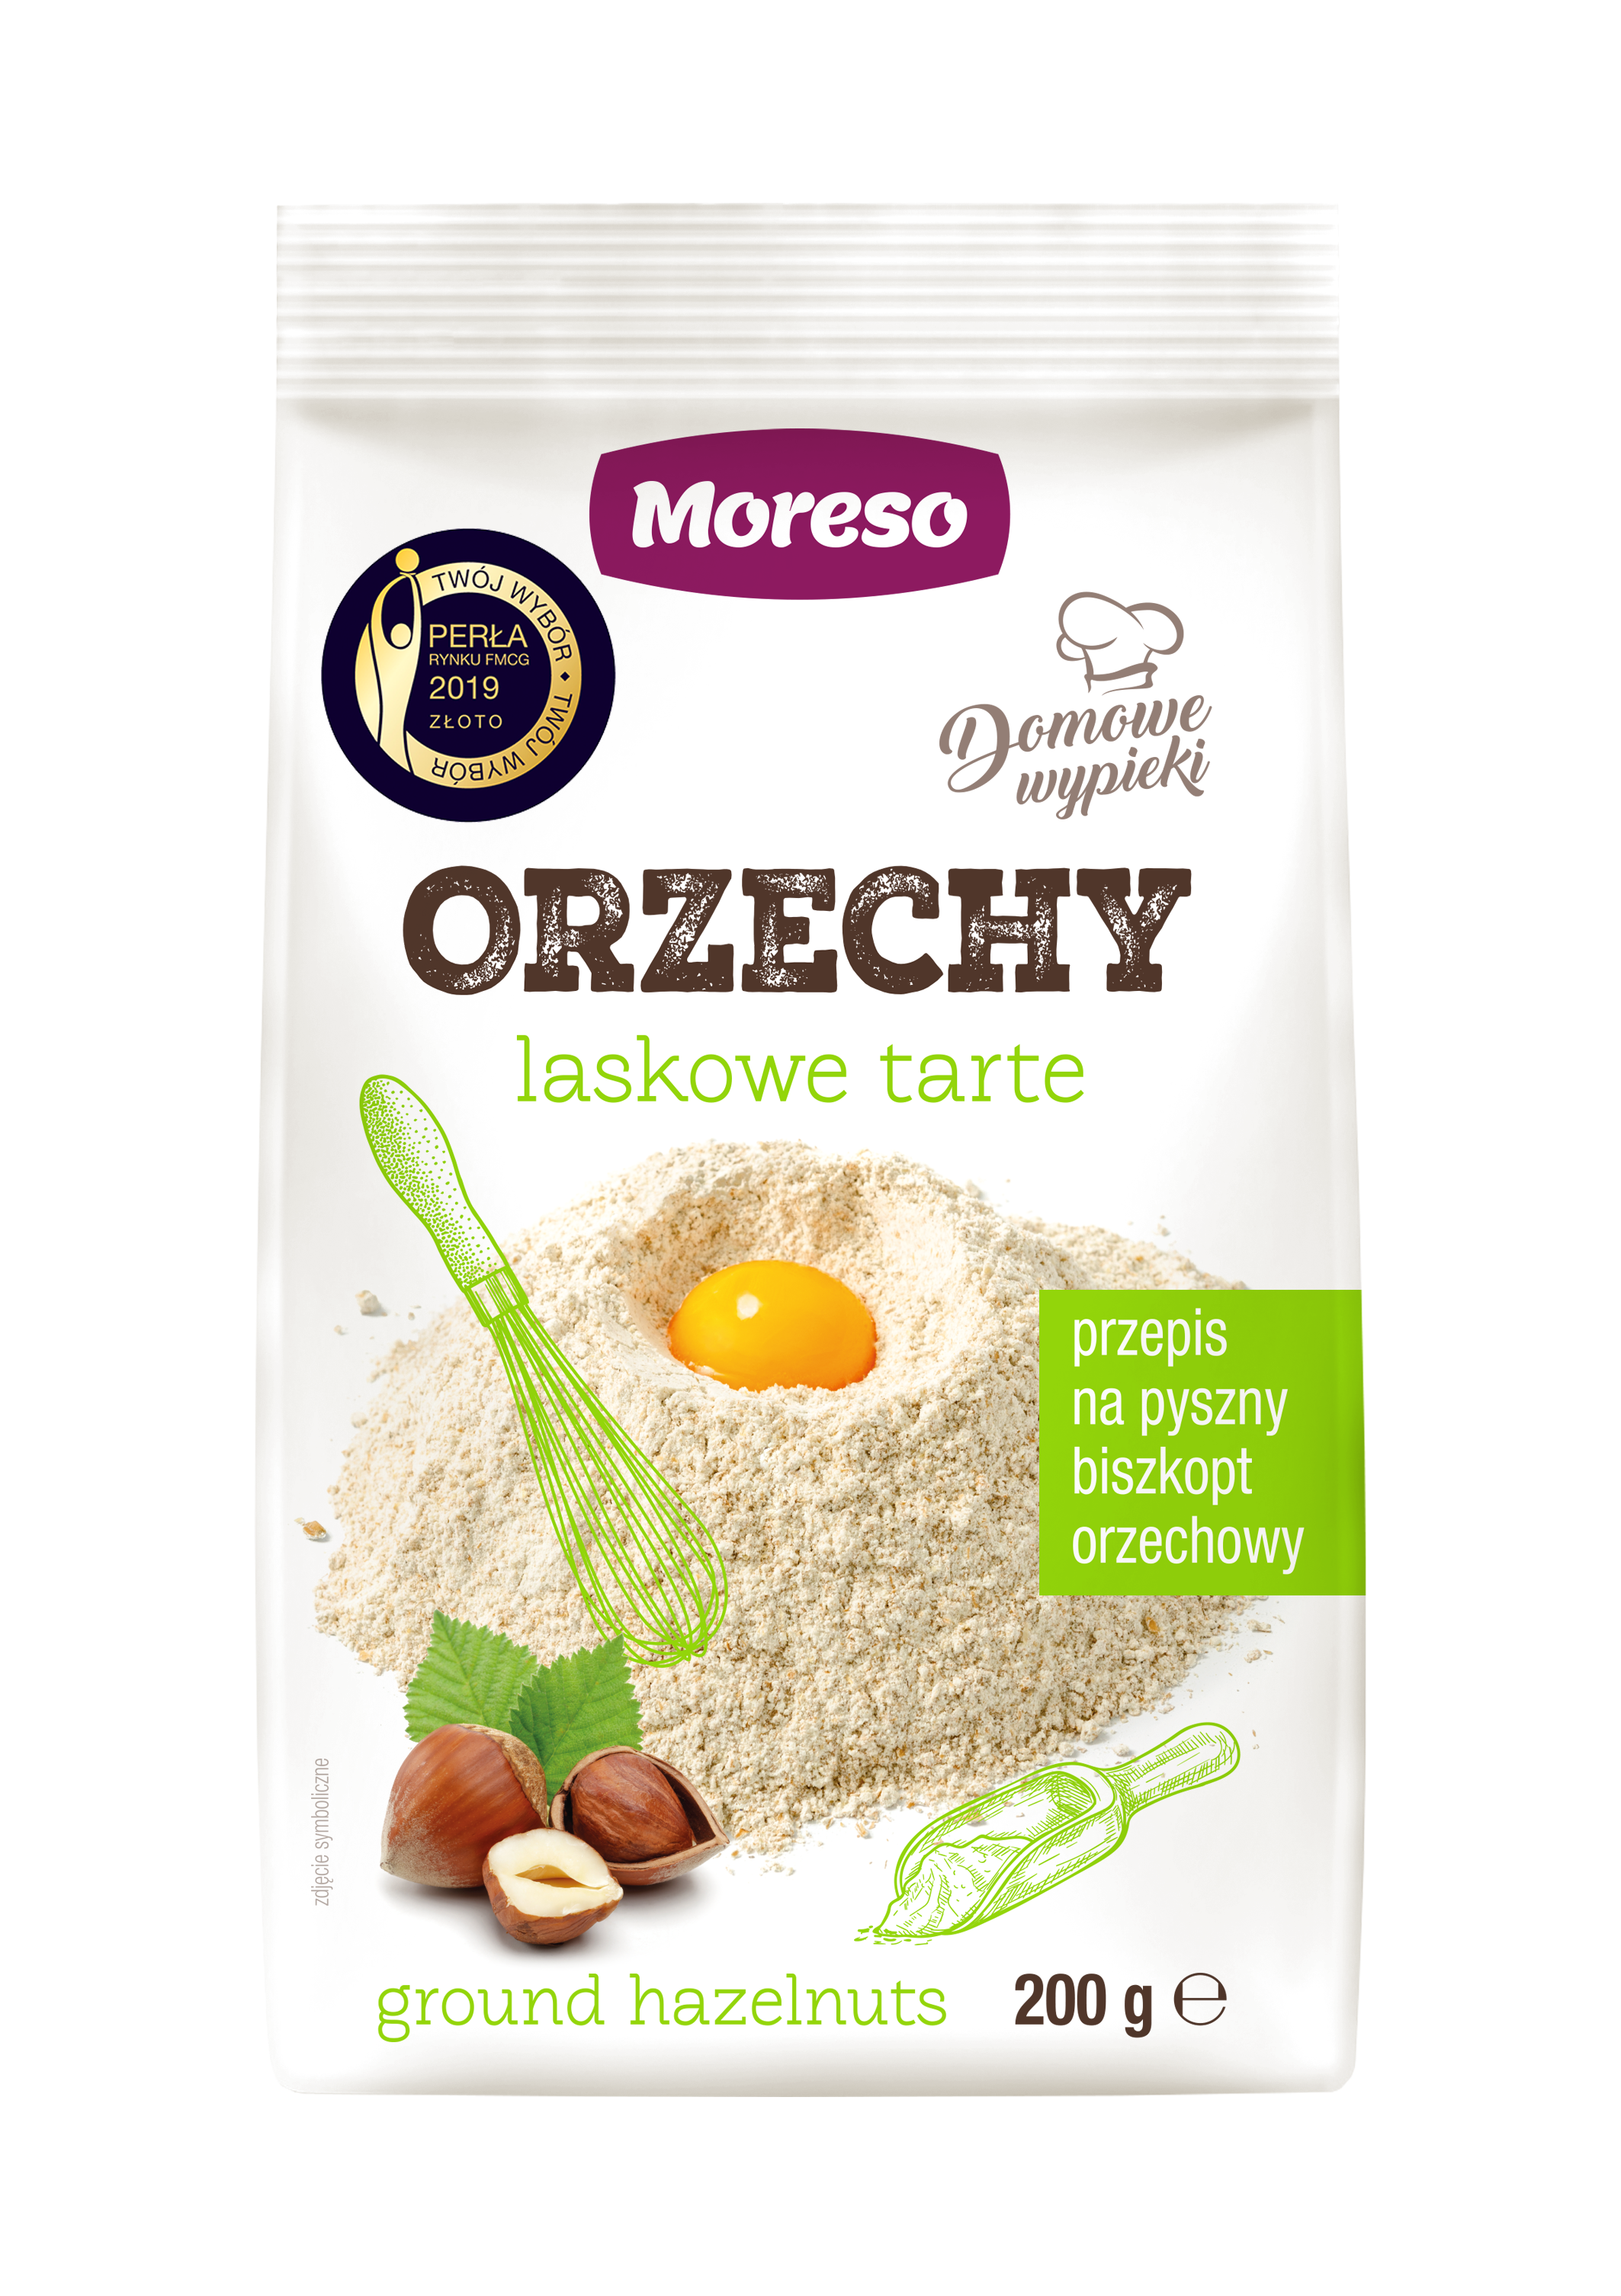 Zobacz ORZECHY LASKOWE TARTE  na Moreso.pl!